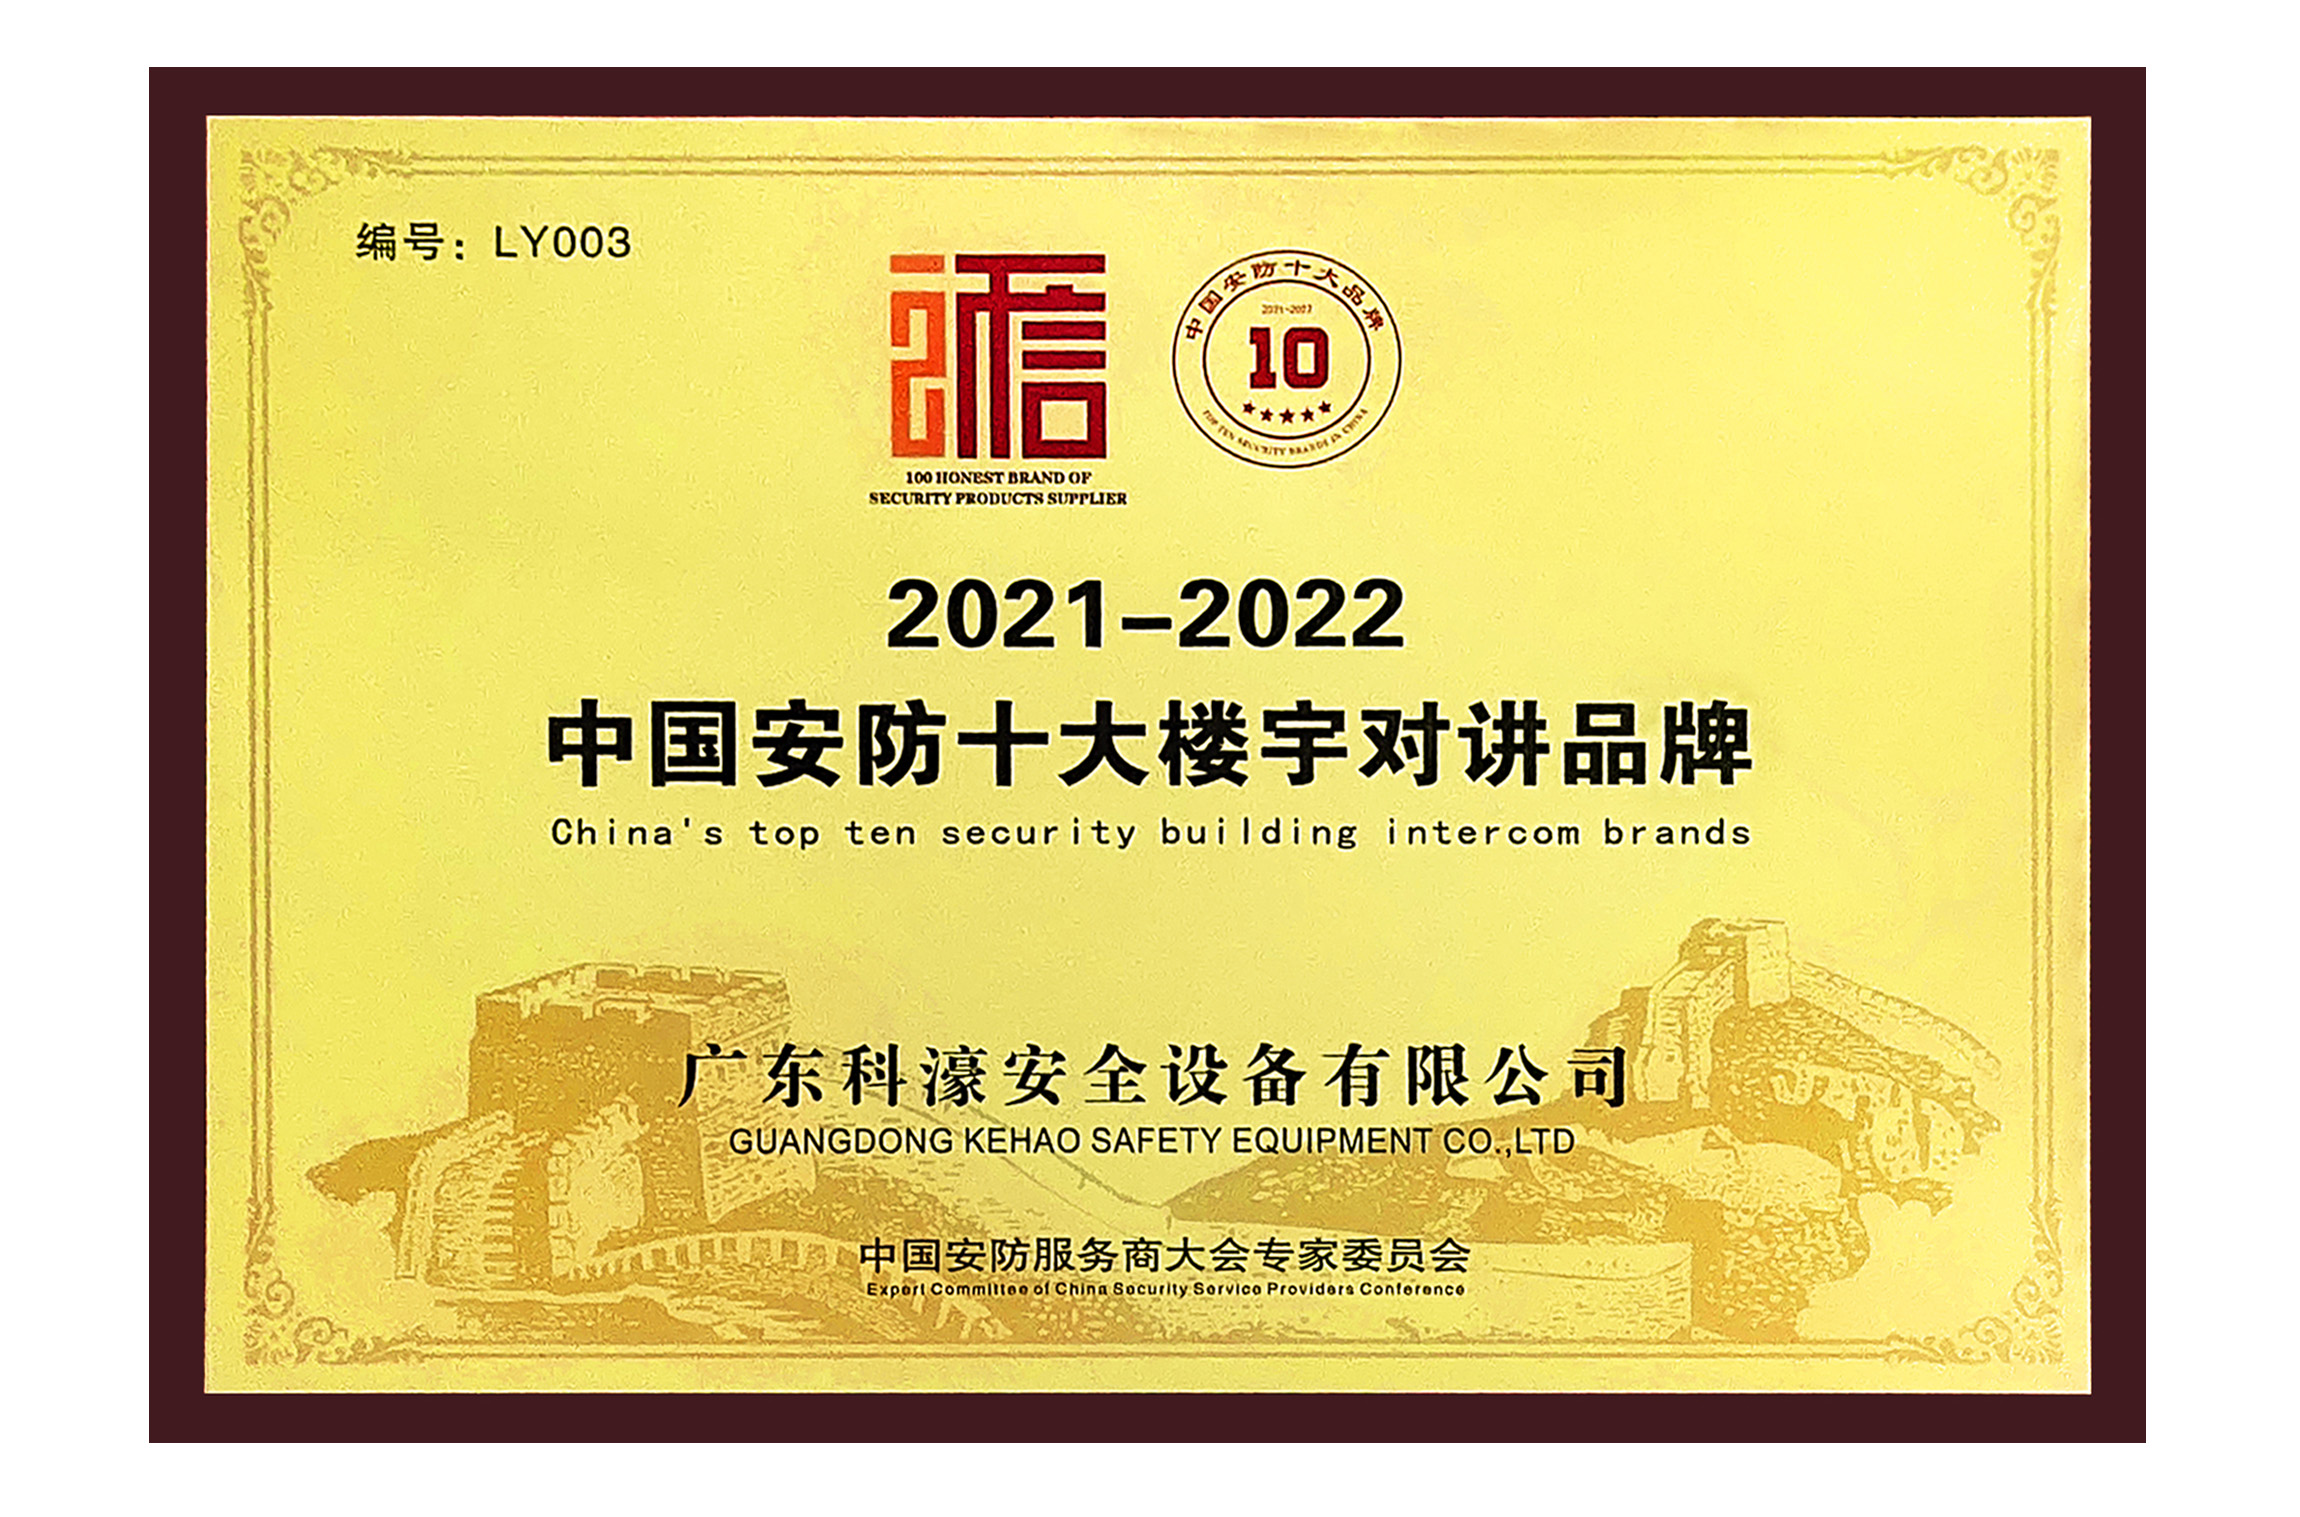 2021-2022中国安防十大楼宇对讲品牌